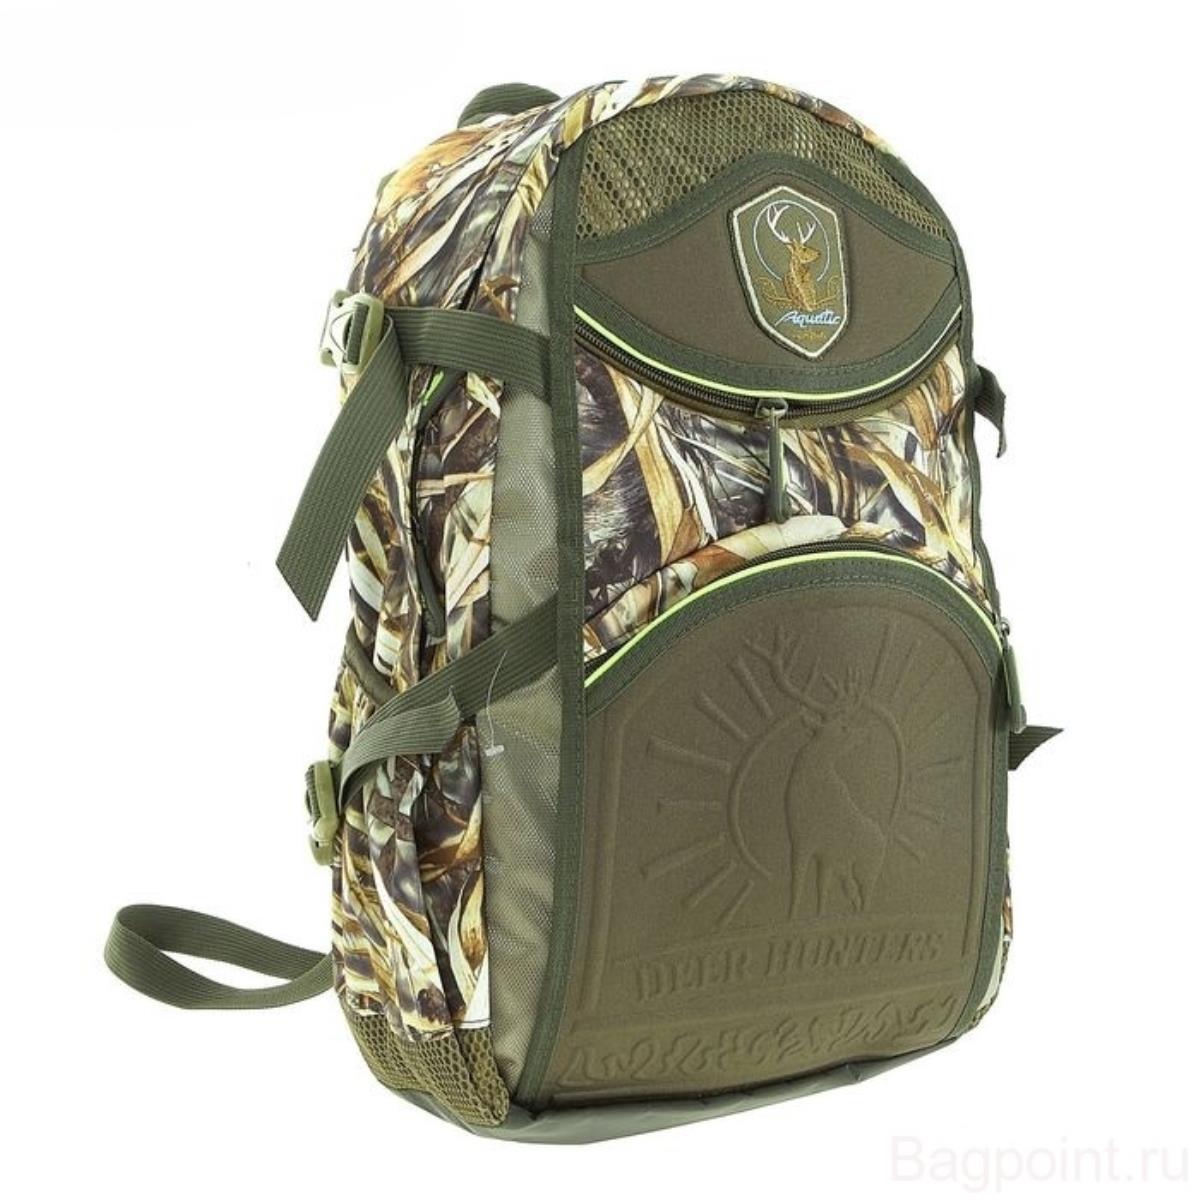 Рюкзак для охоты 32л (РО-32) Aquatic рюкзак на молнии 2 наружных кармана бордовый